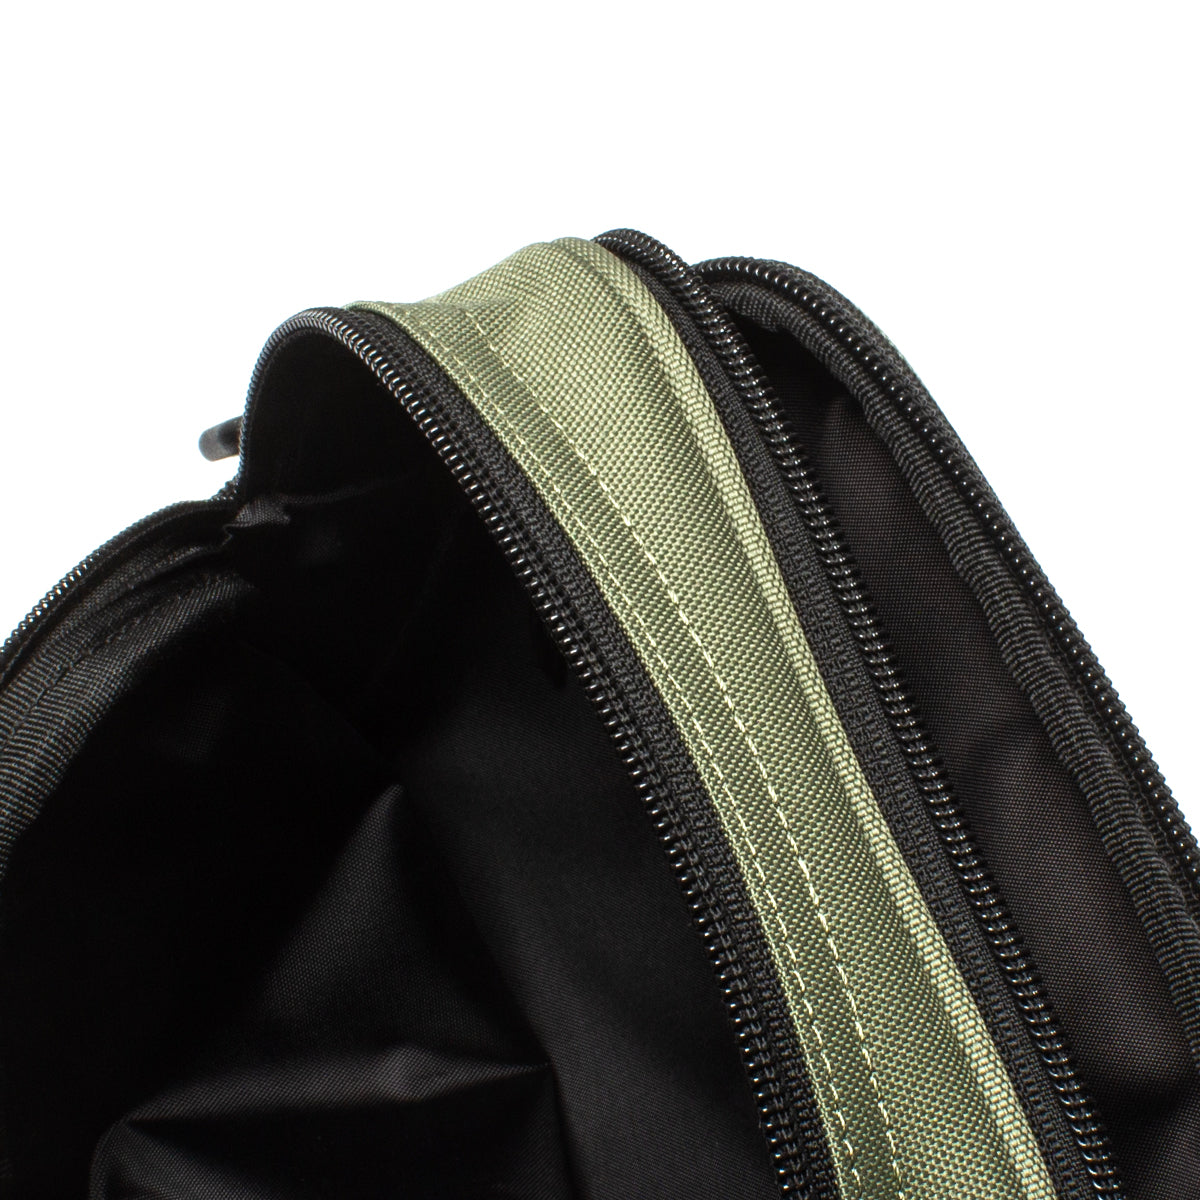 Carhartt Green Bags for Men